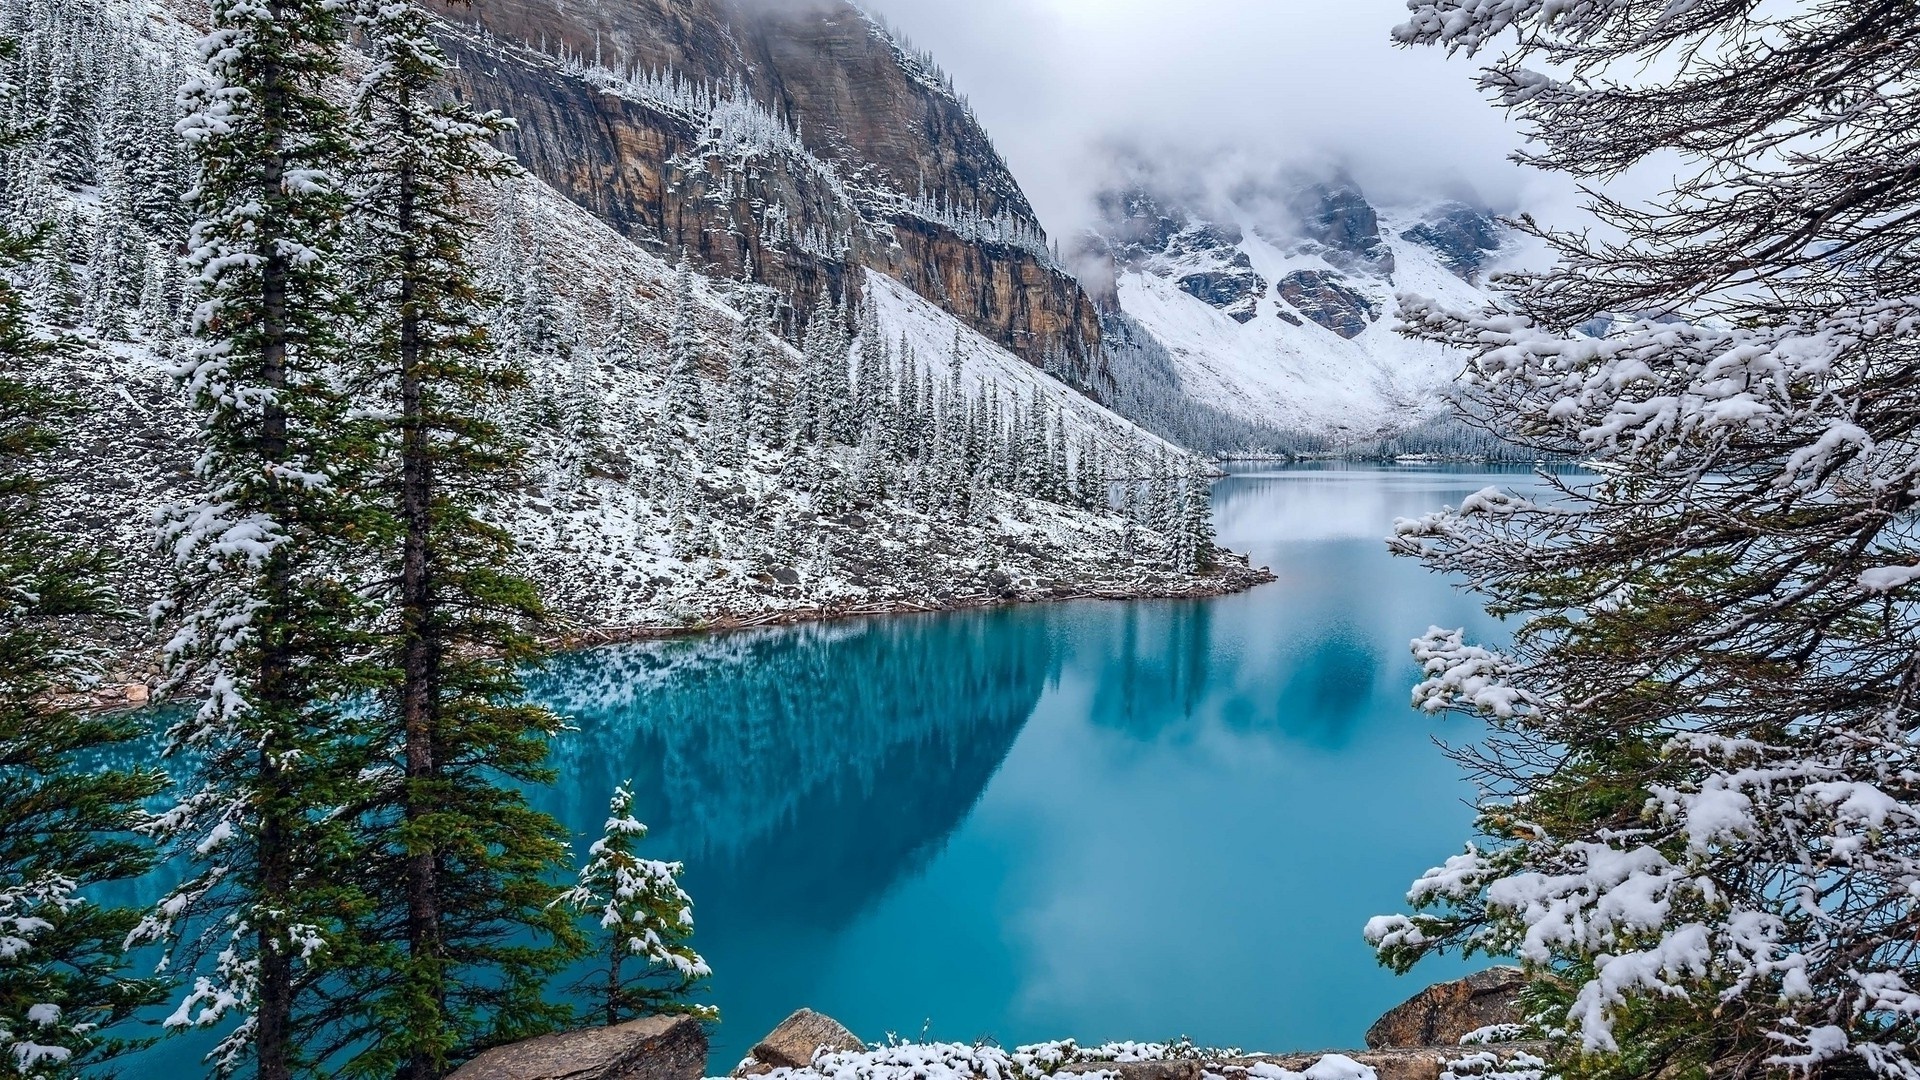 Lake Louise, Winter wonderland, Frozen water beauty, Tranquility in nature, 1920x1080 Full HD Desktop